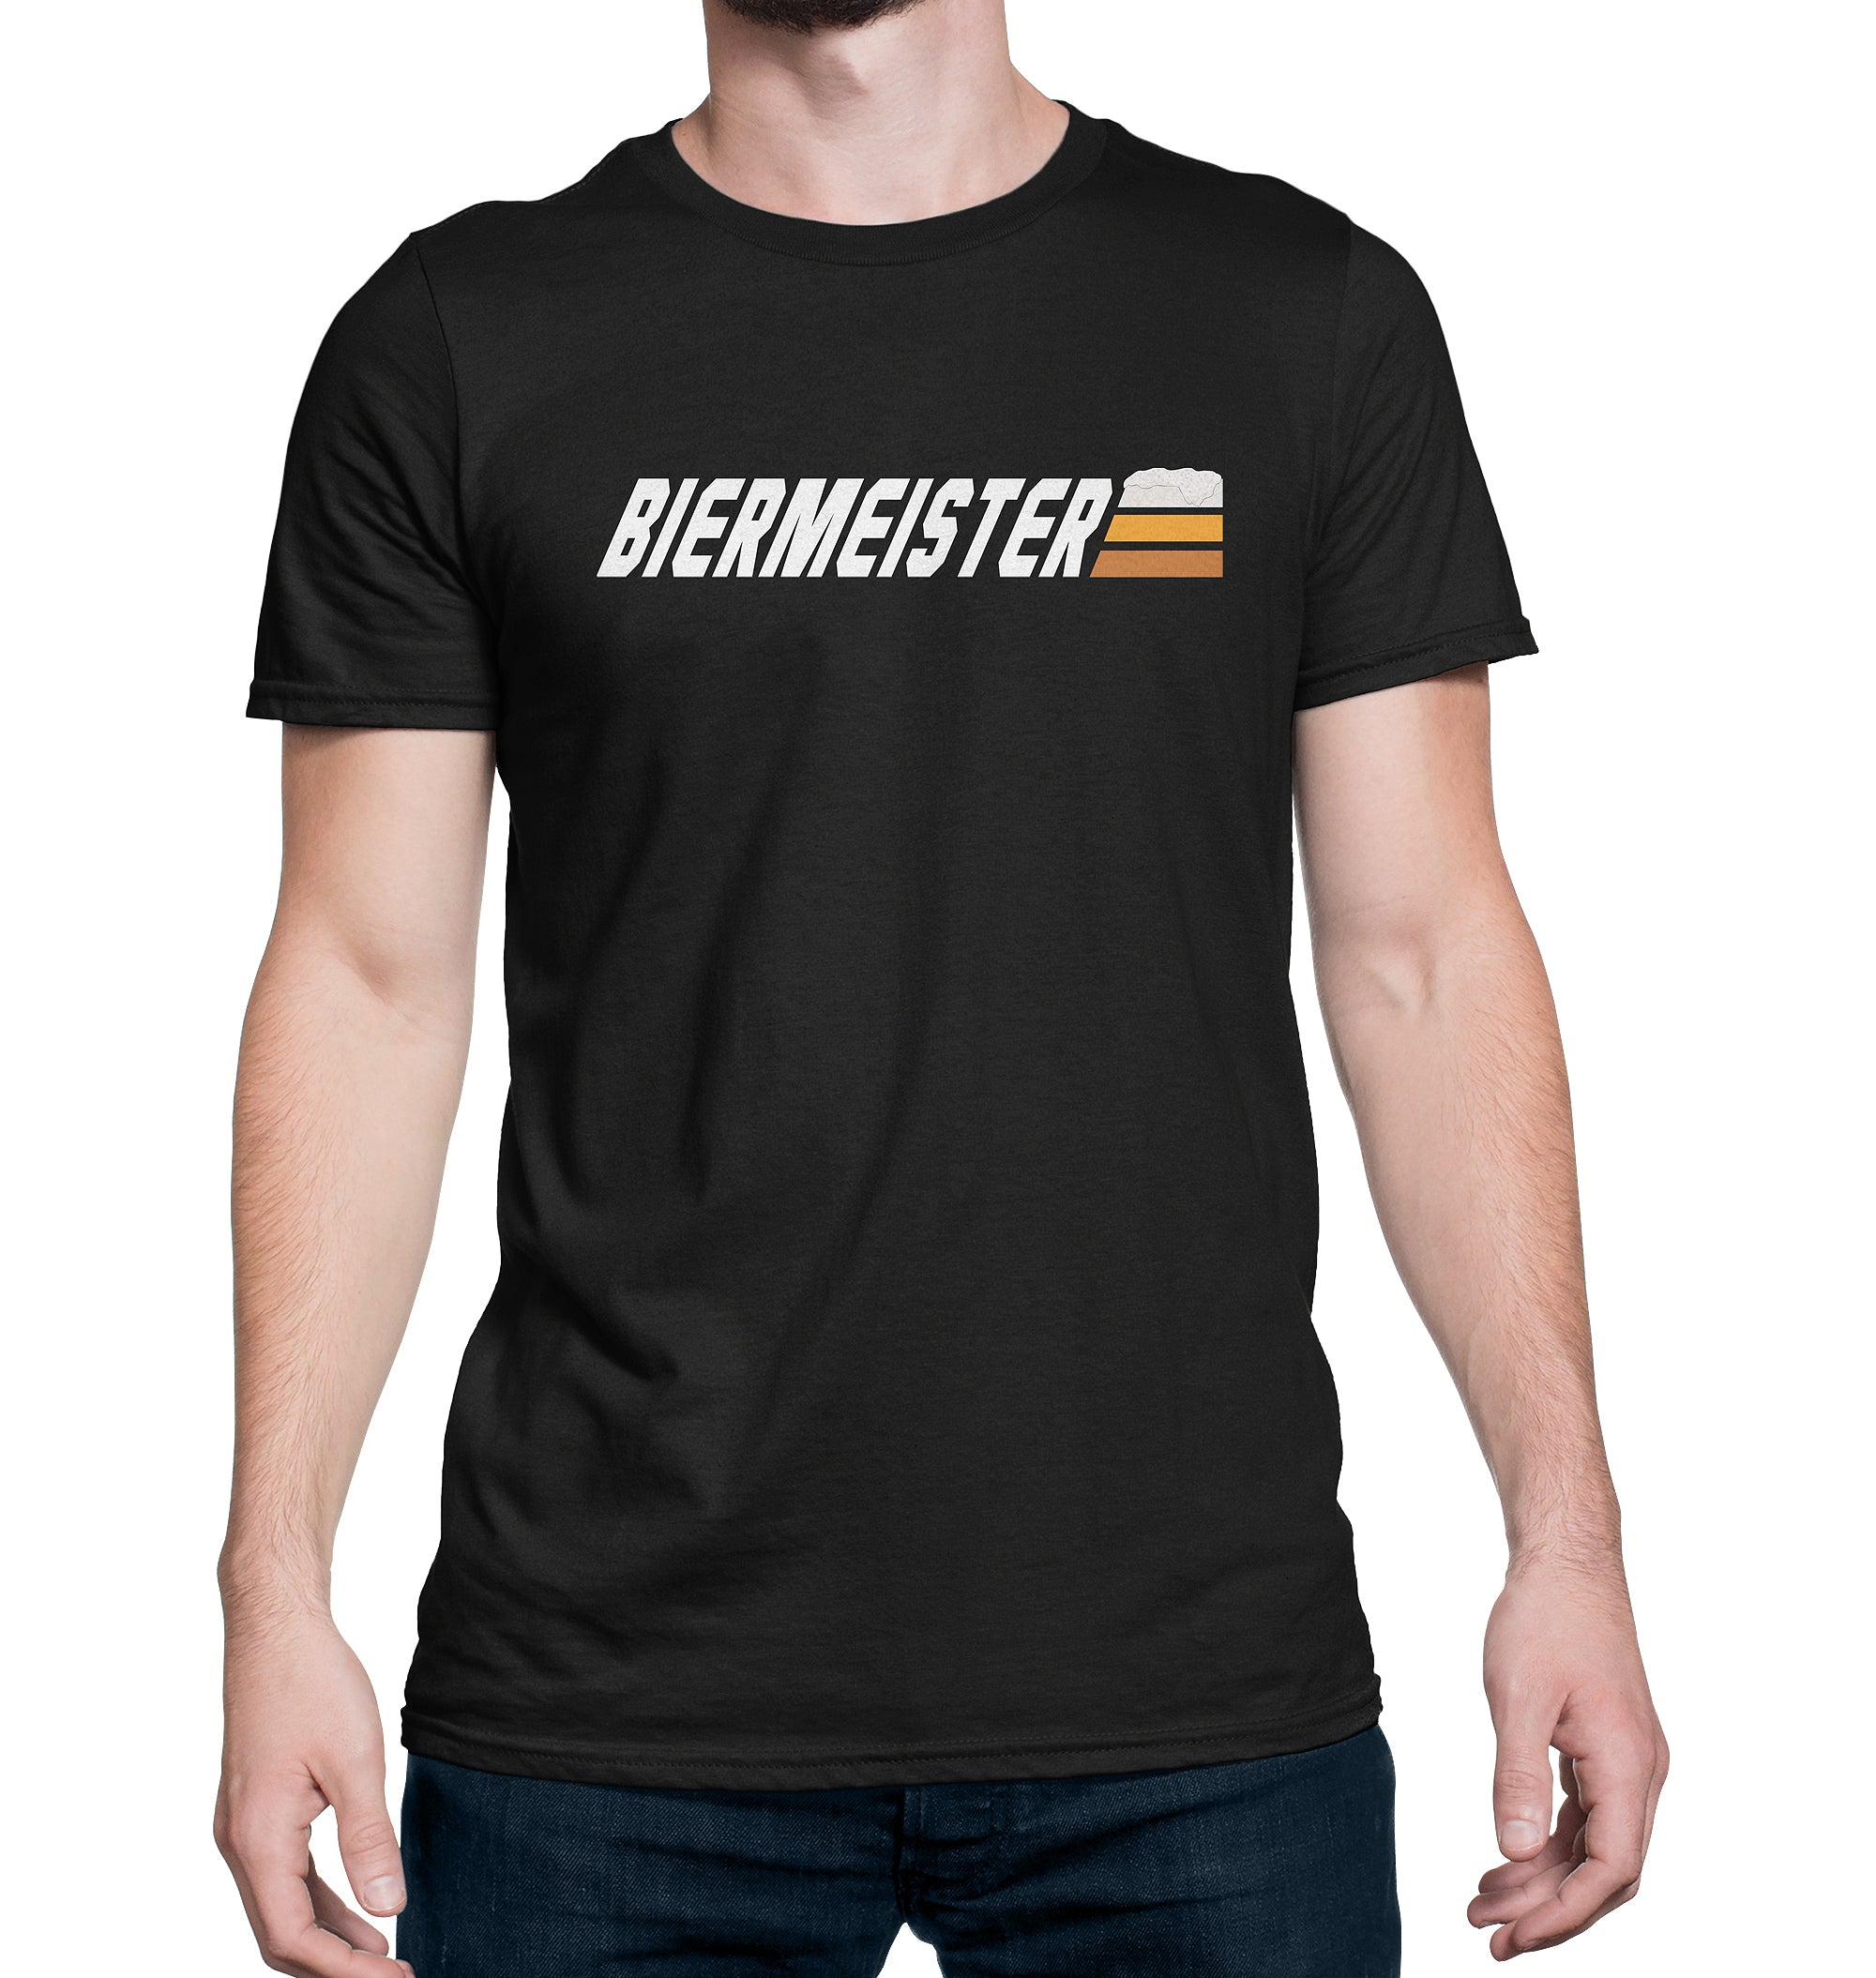 Biermeister Master of Beer T-Shirt on Model